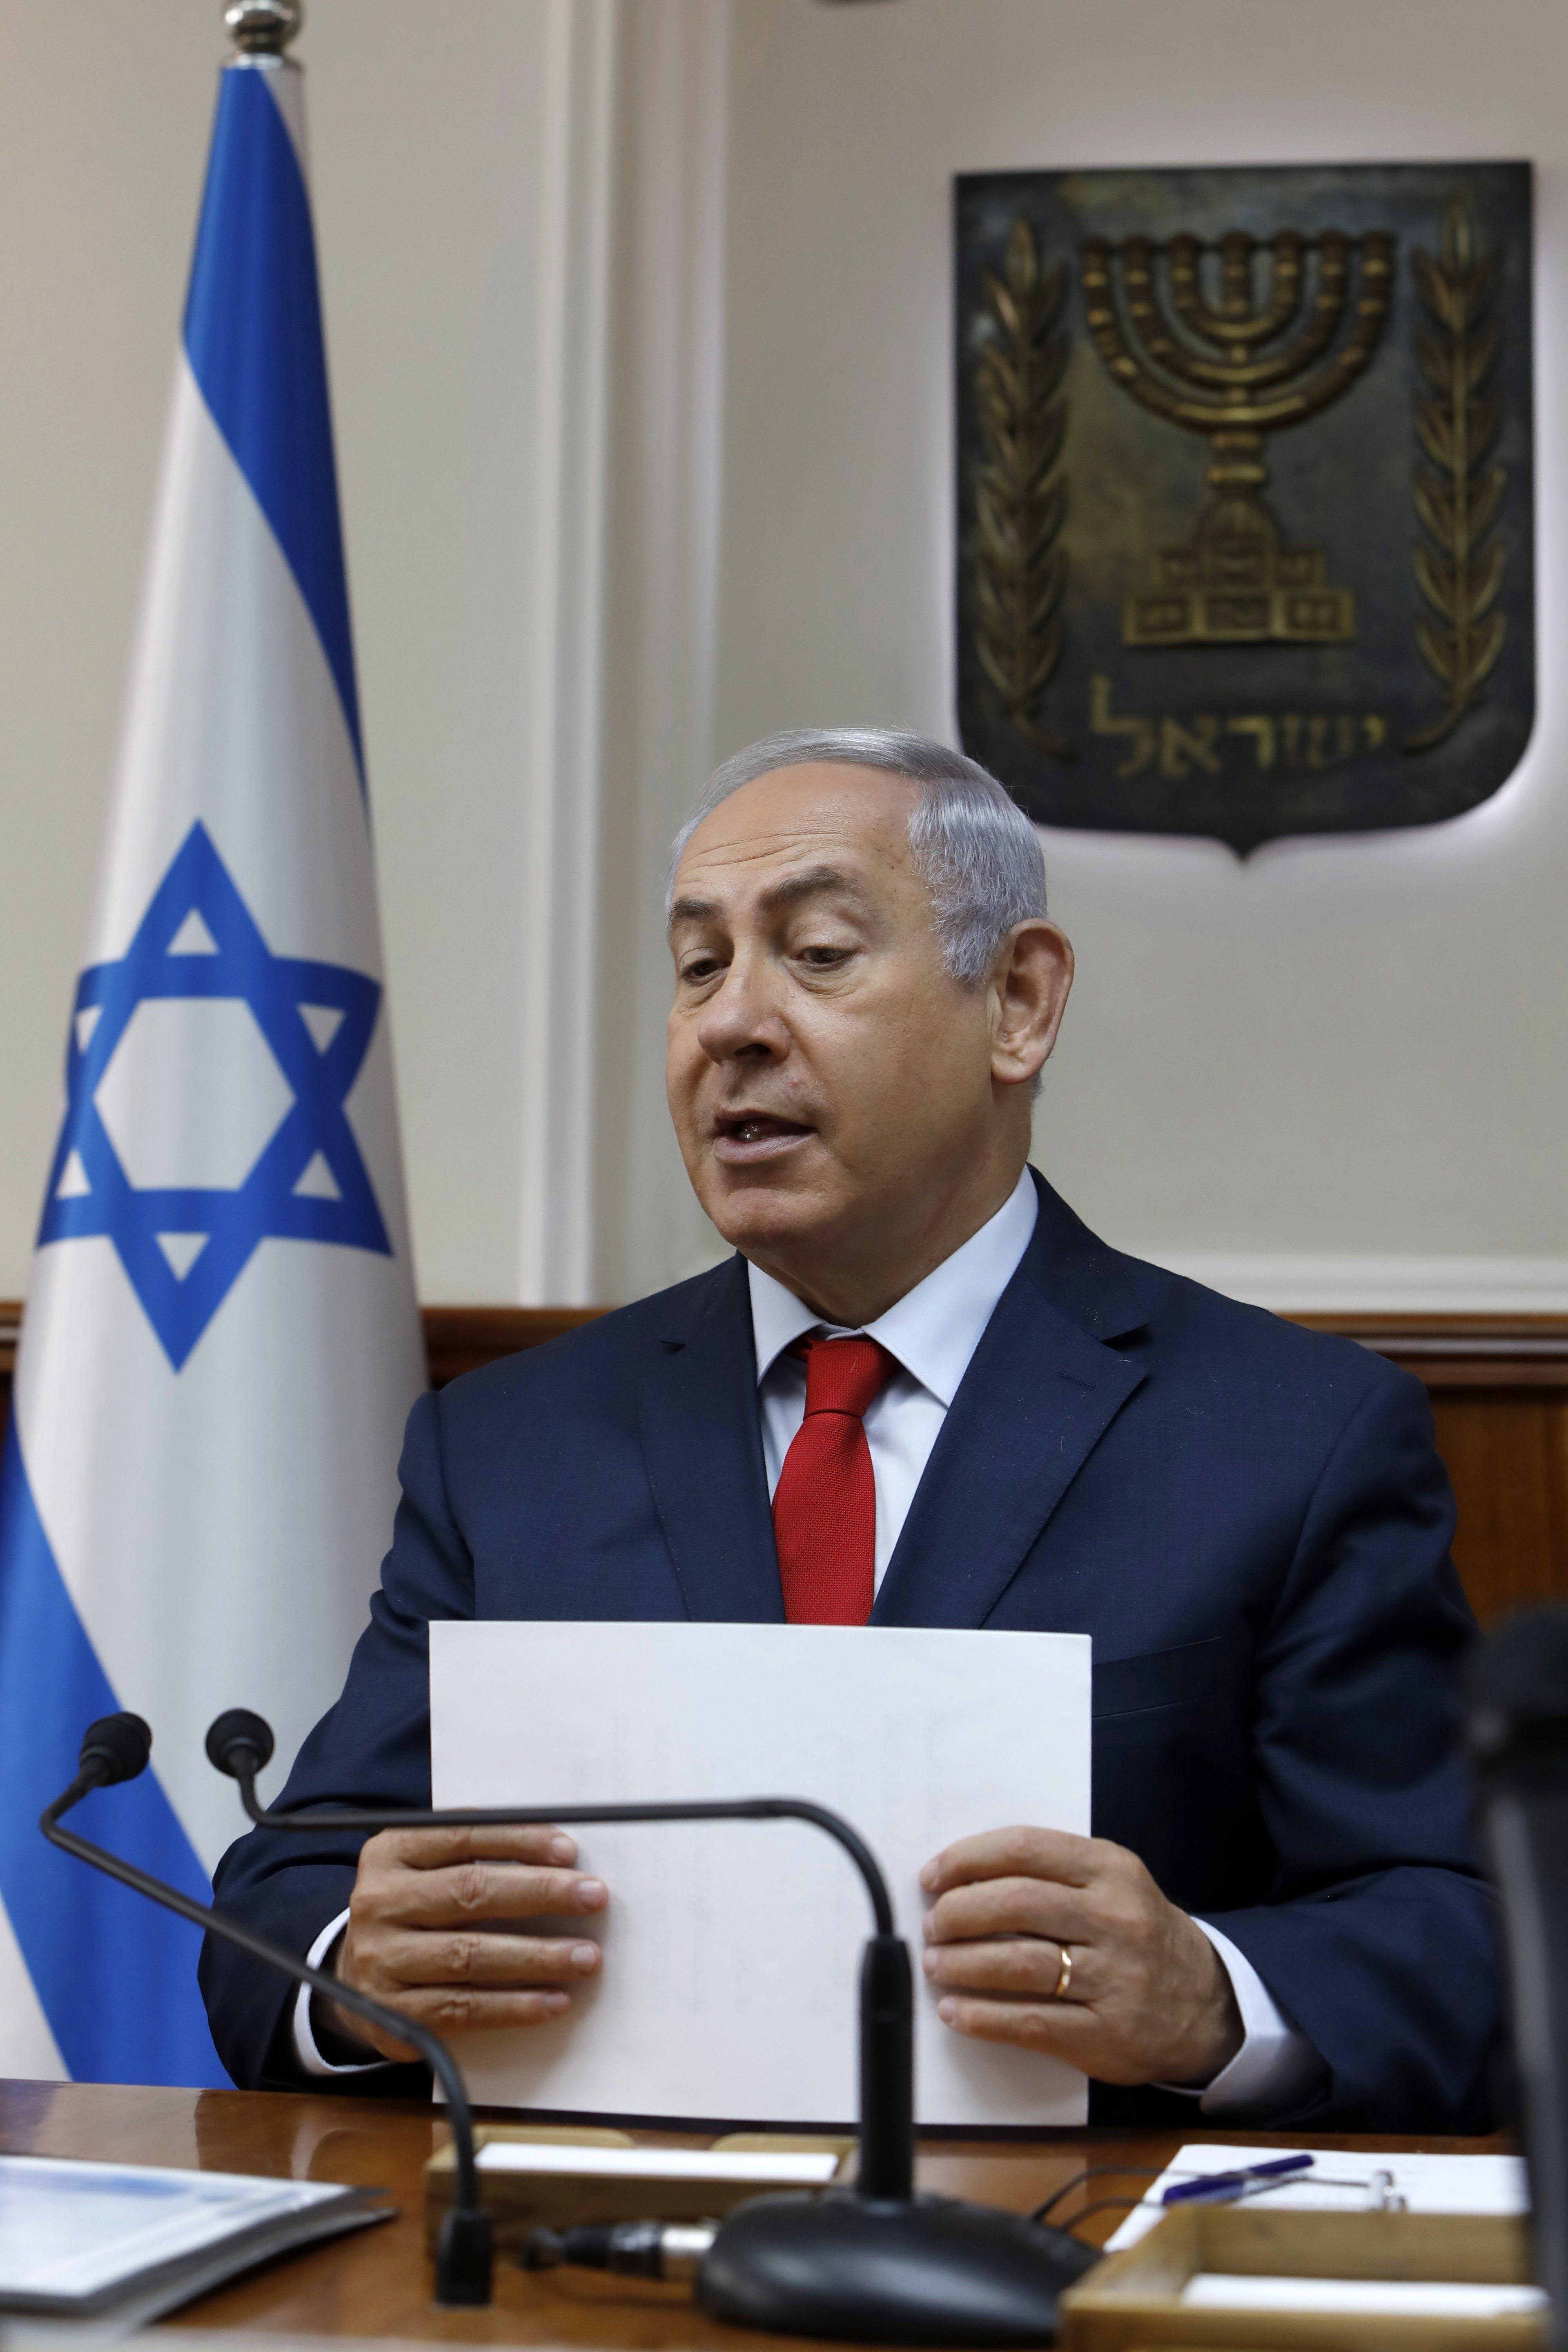 Netanyahu y Gantz sin mayorías en un lento recuento de votos en Israel